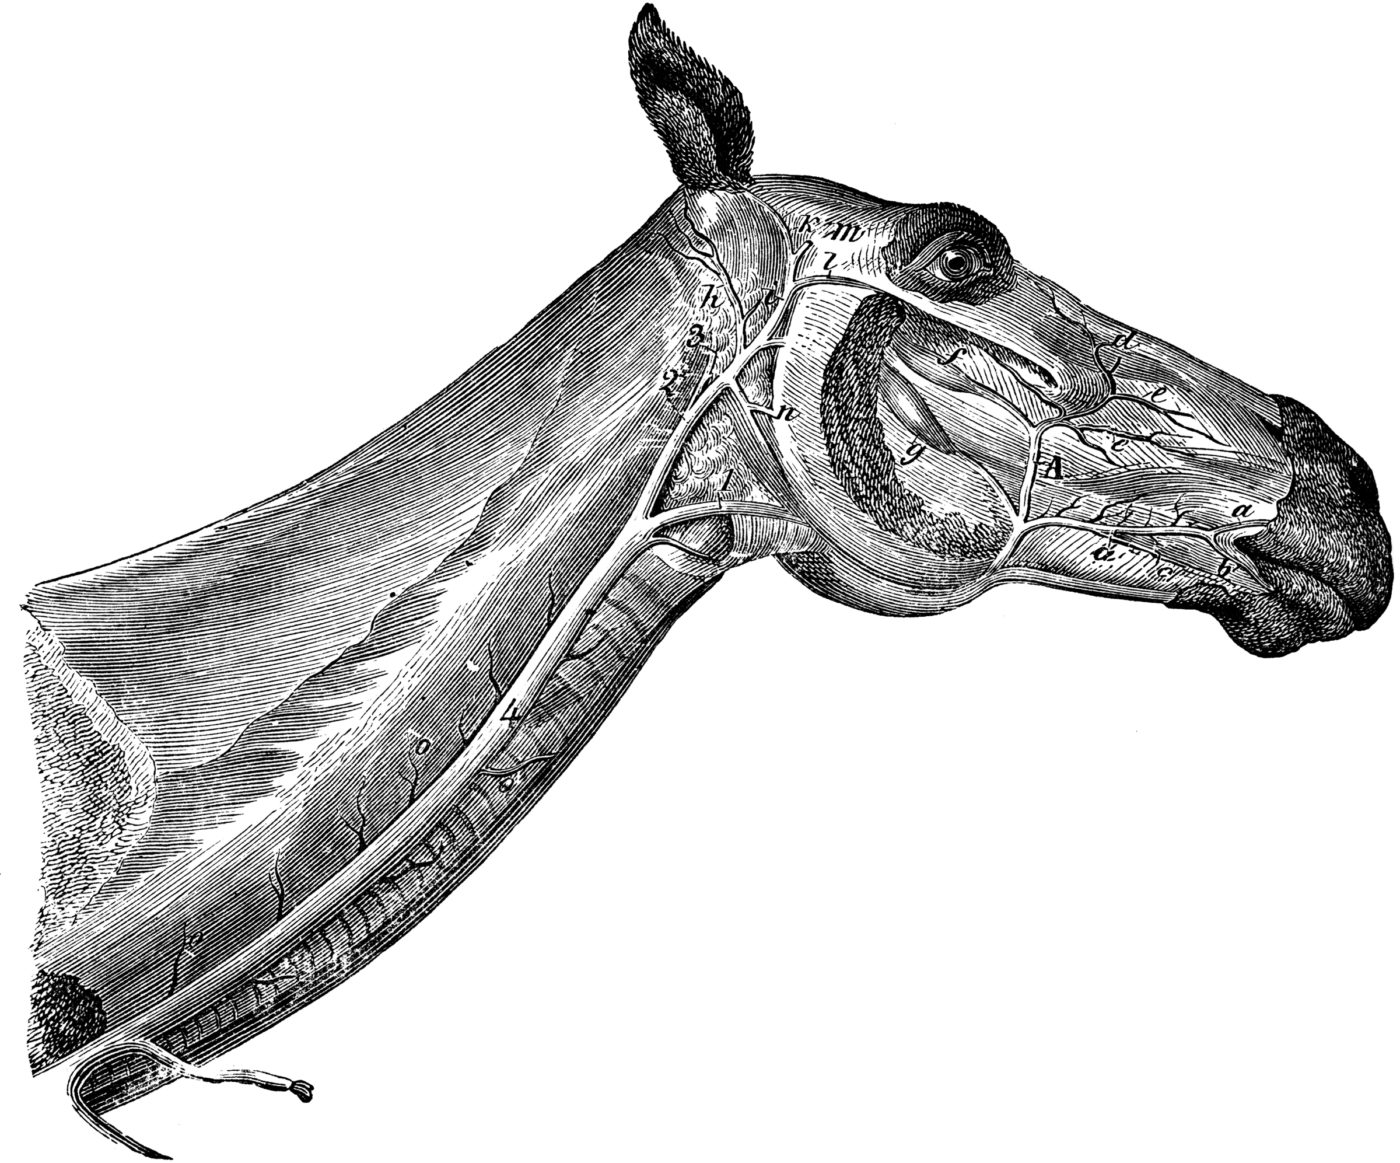 Système veineux de la face du cheval (3)